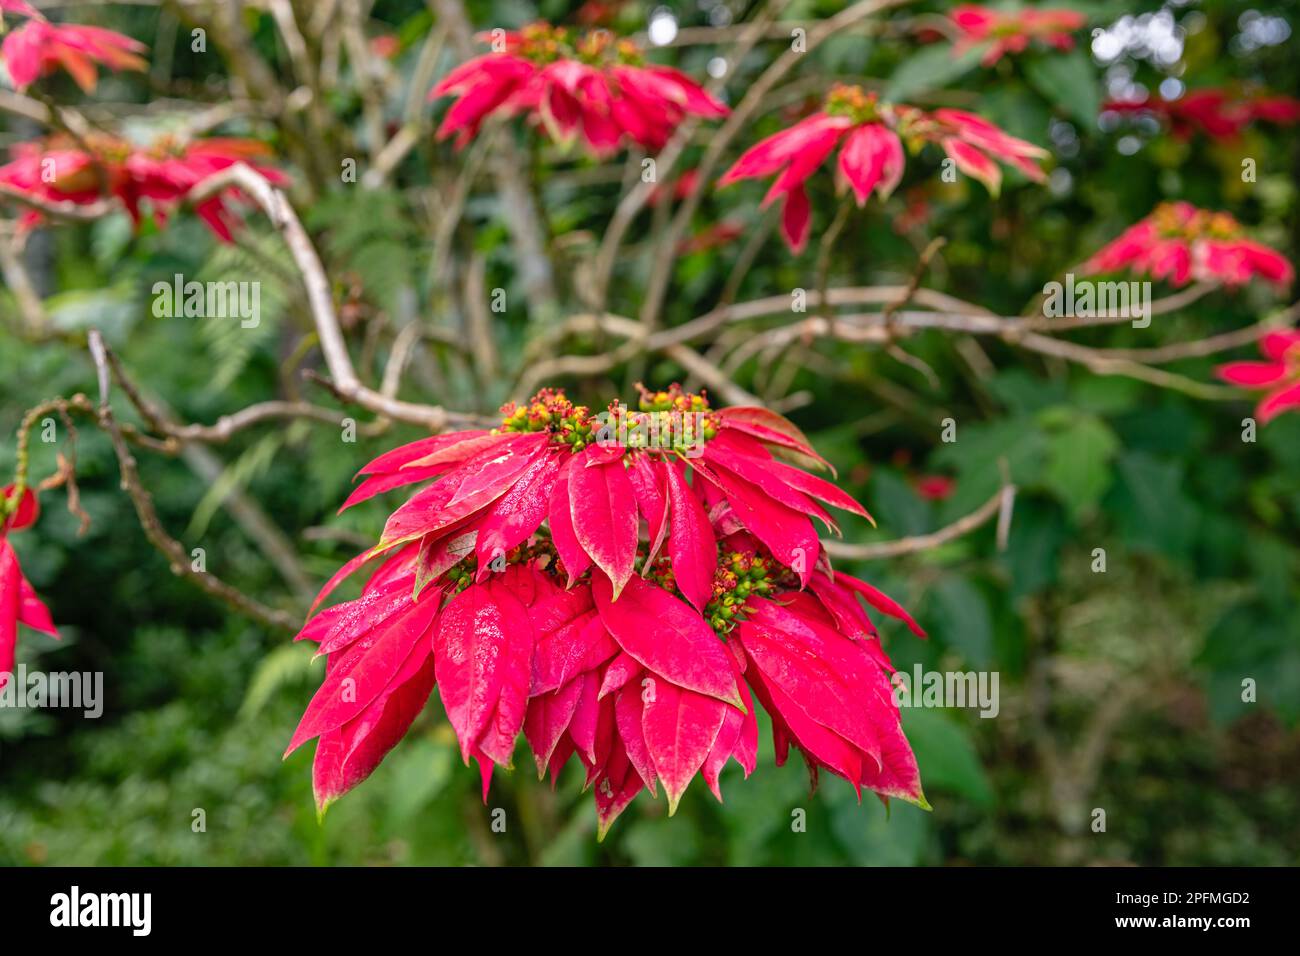 Rouge floraison Poinsettia arbre (Euphorbia pulcherrima). Bedugul, Bali, Indonésie. Banque D'Images